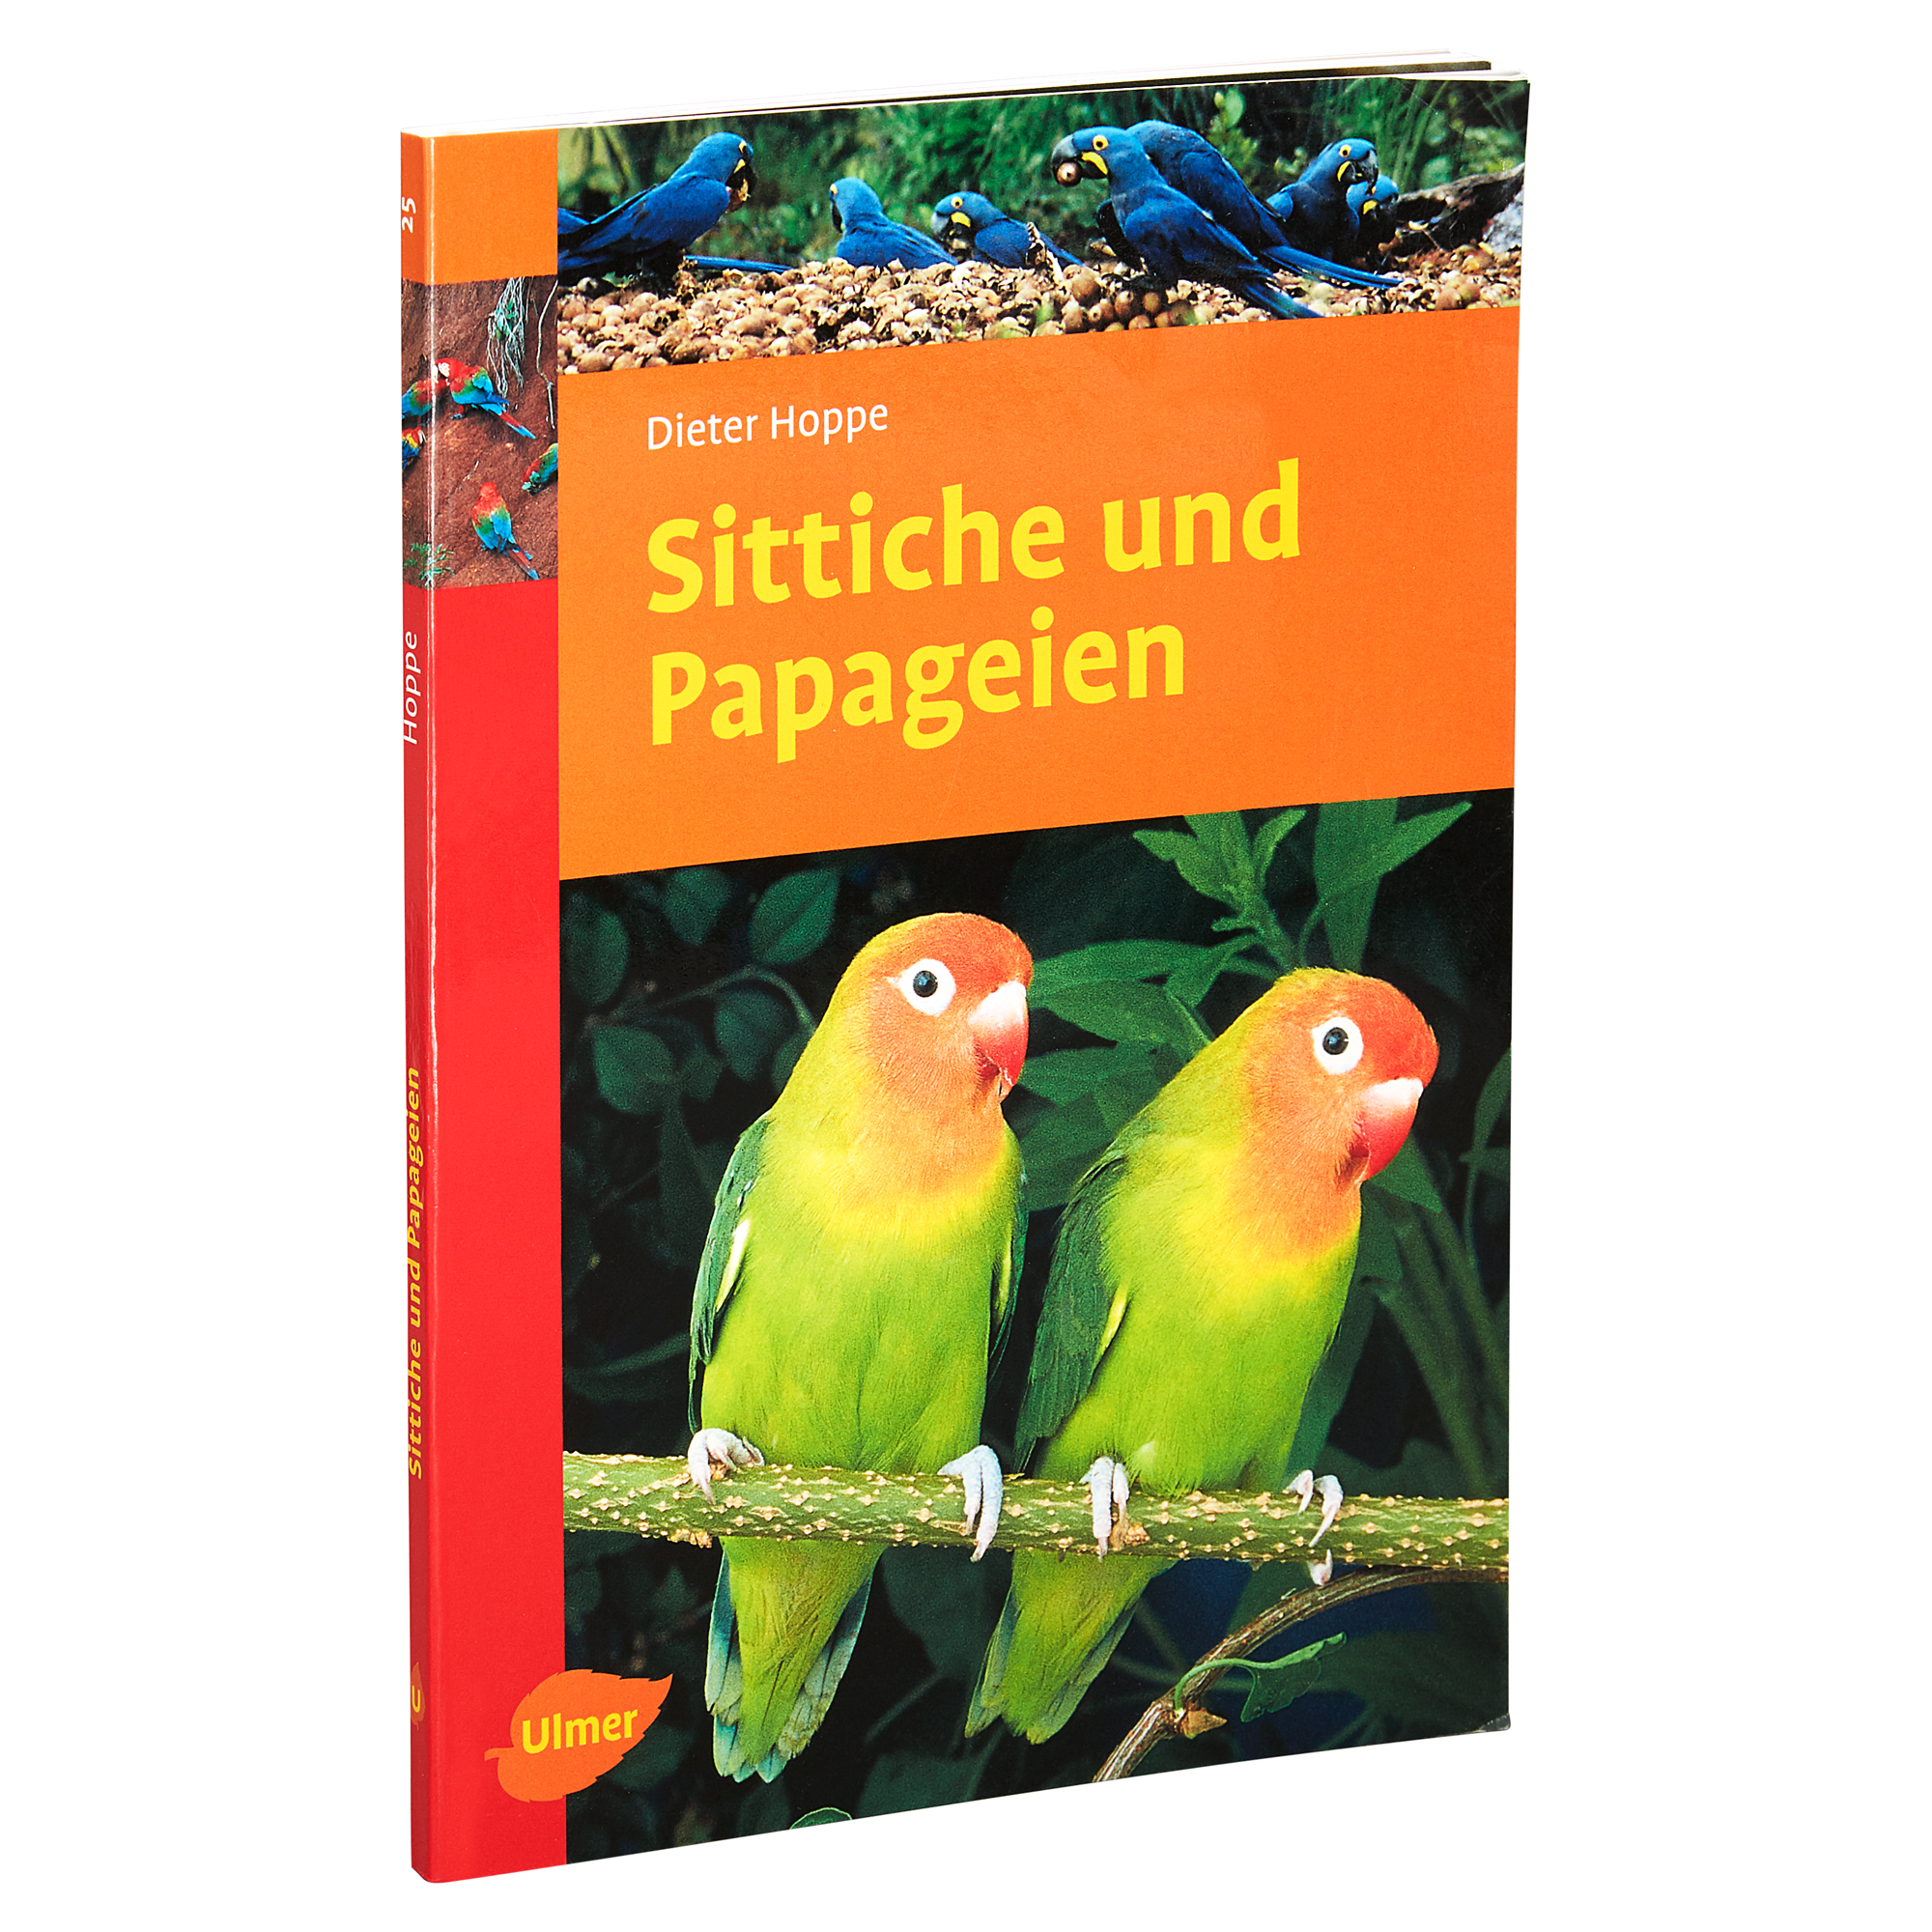 Ulmer-Tierratgeber "Sittiche und Papageien" PB 128 S. + product picture